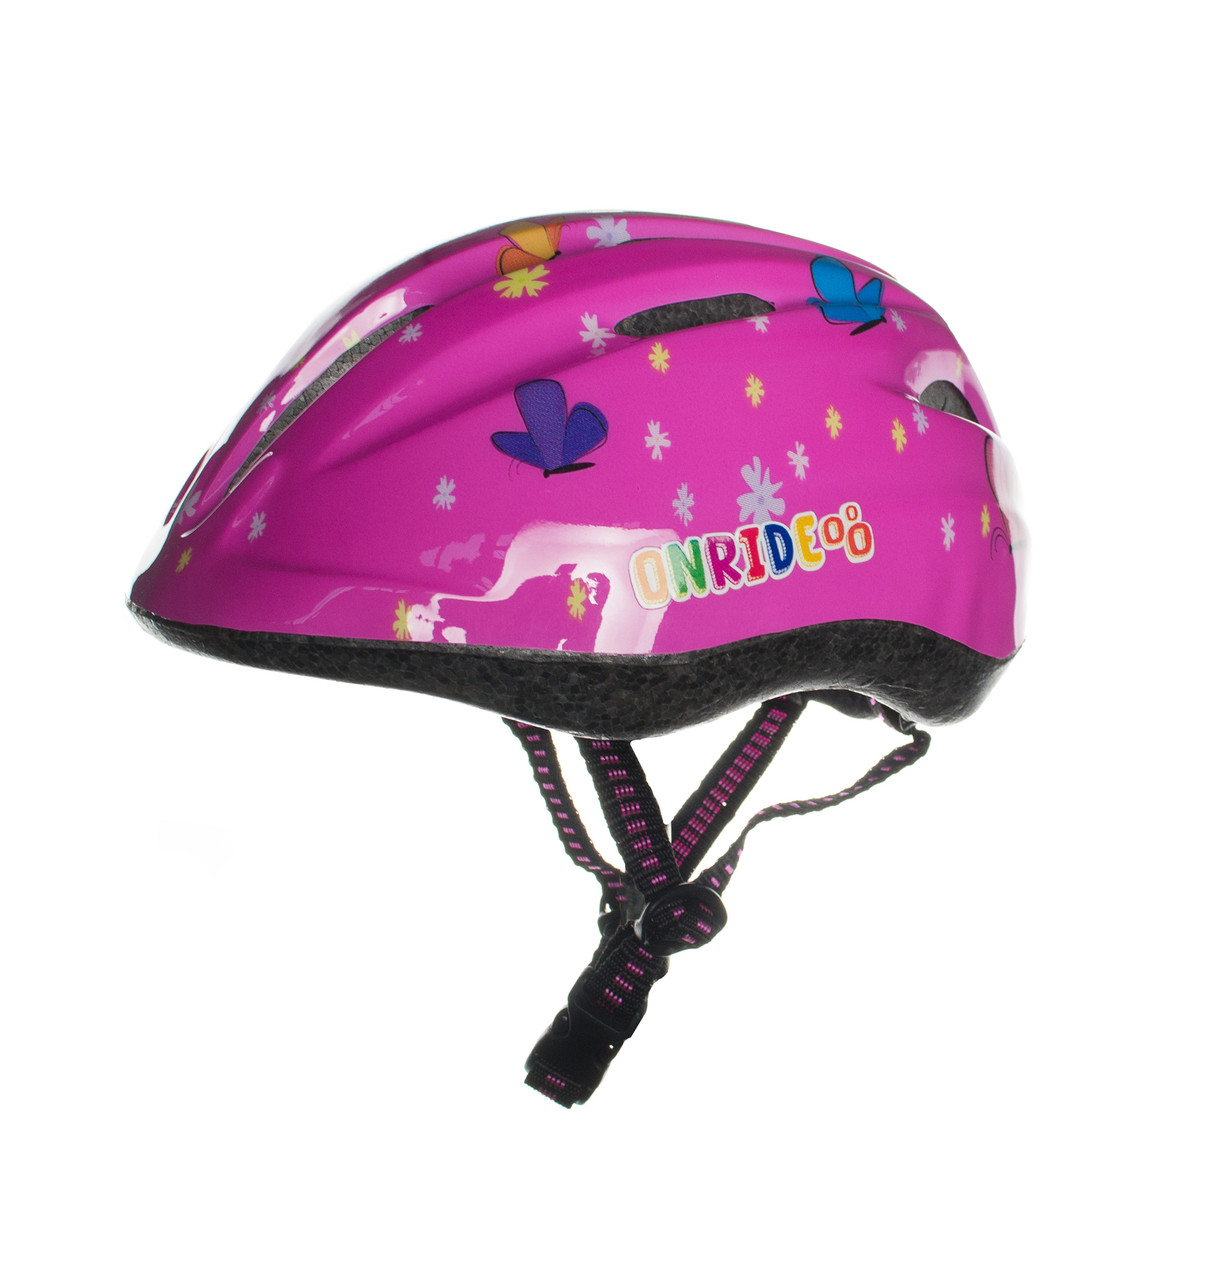 

Велосипедный детский шлем Onride Clip бабочки M 52-56 Розовый